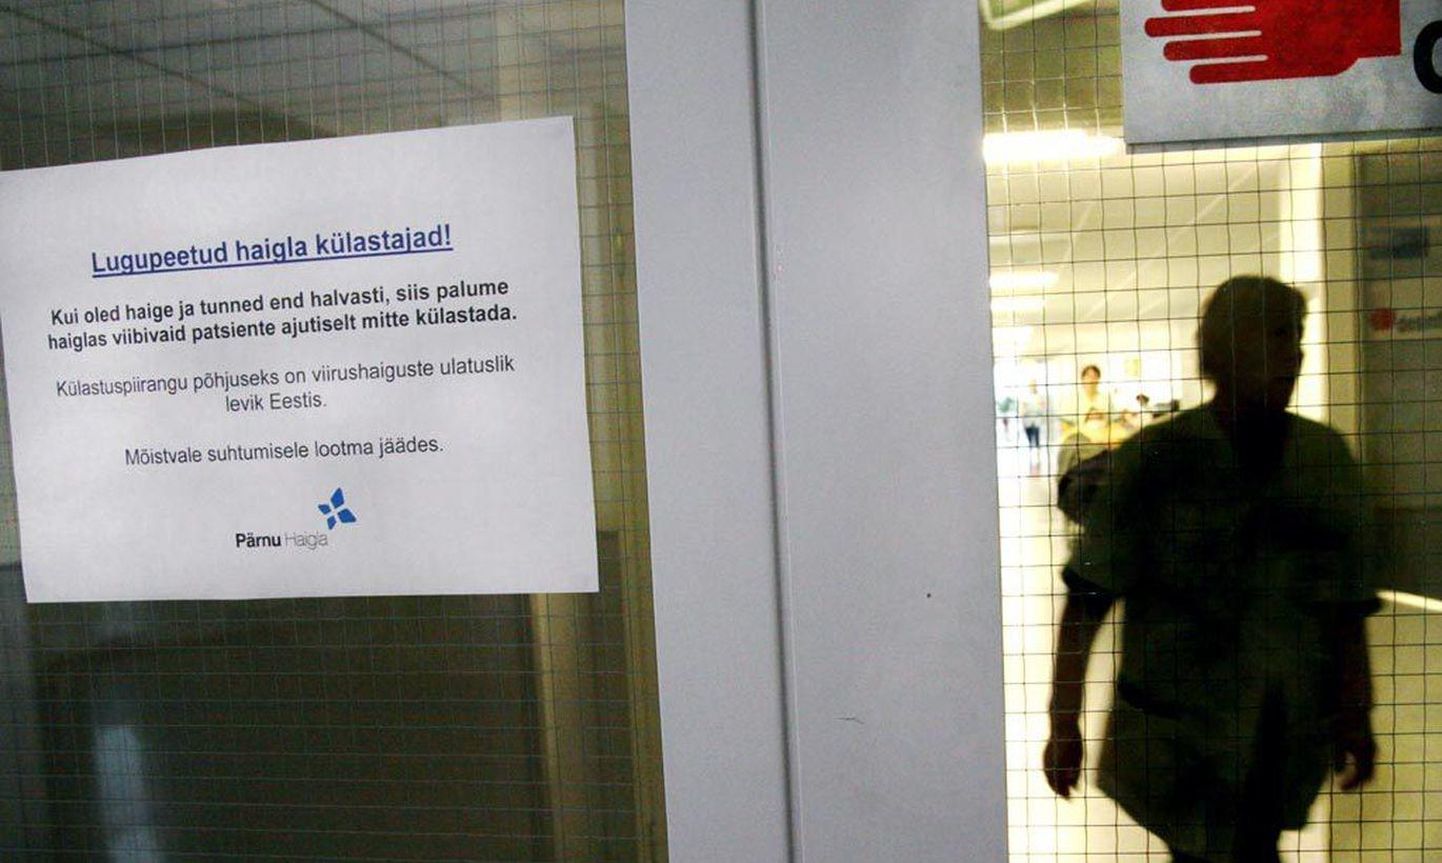 Ühelgi aastal ei ole Pärnu haigla gripi leviku tõttu pääsenud külastuspiirangust. Esmalt pannakse välja suu-ninamaski karbid ja piiratakse patsentide külastamist. Esimeste haiglasiseste haigestumiste järel suletakse aga patsentide külastajatele osakonna uksed.